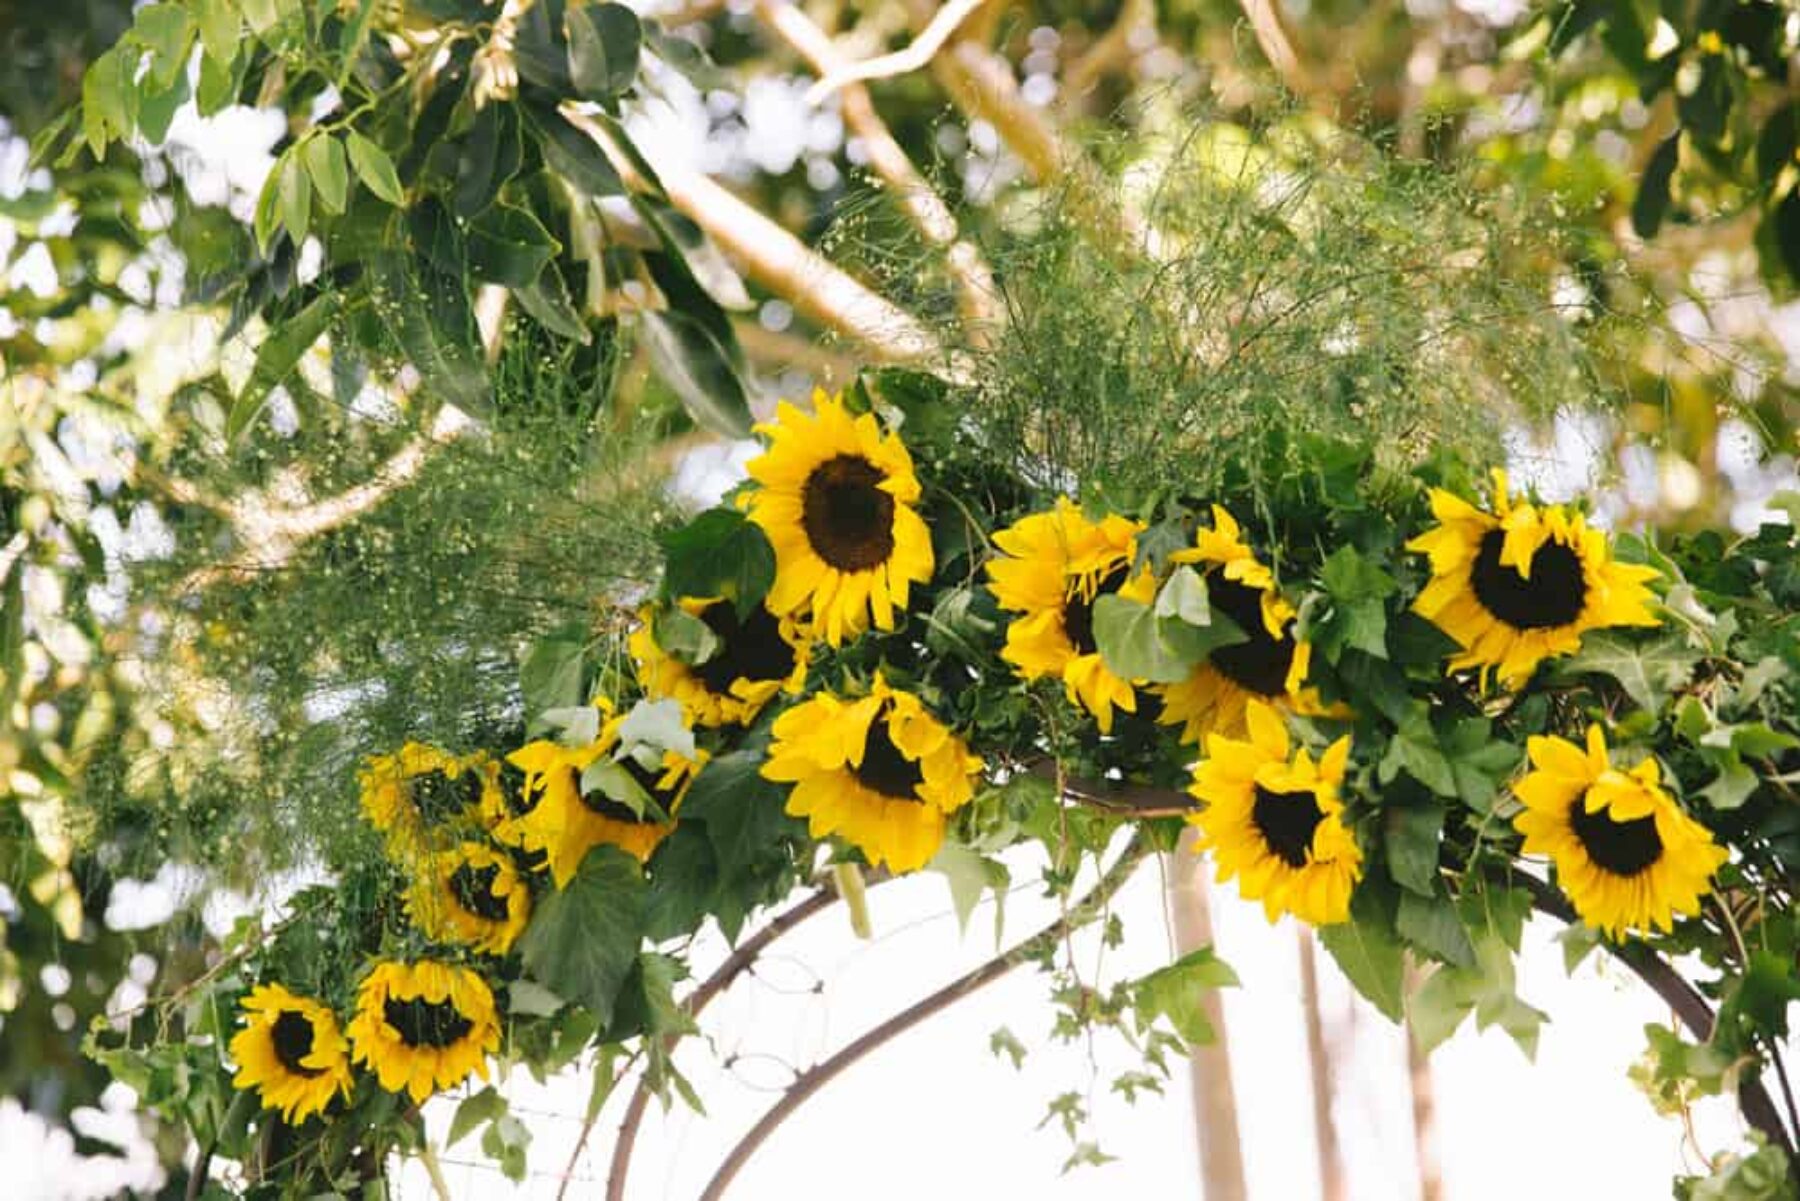 Sunflower wedding arch